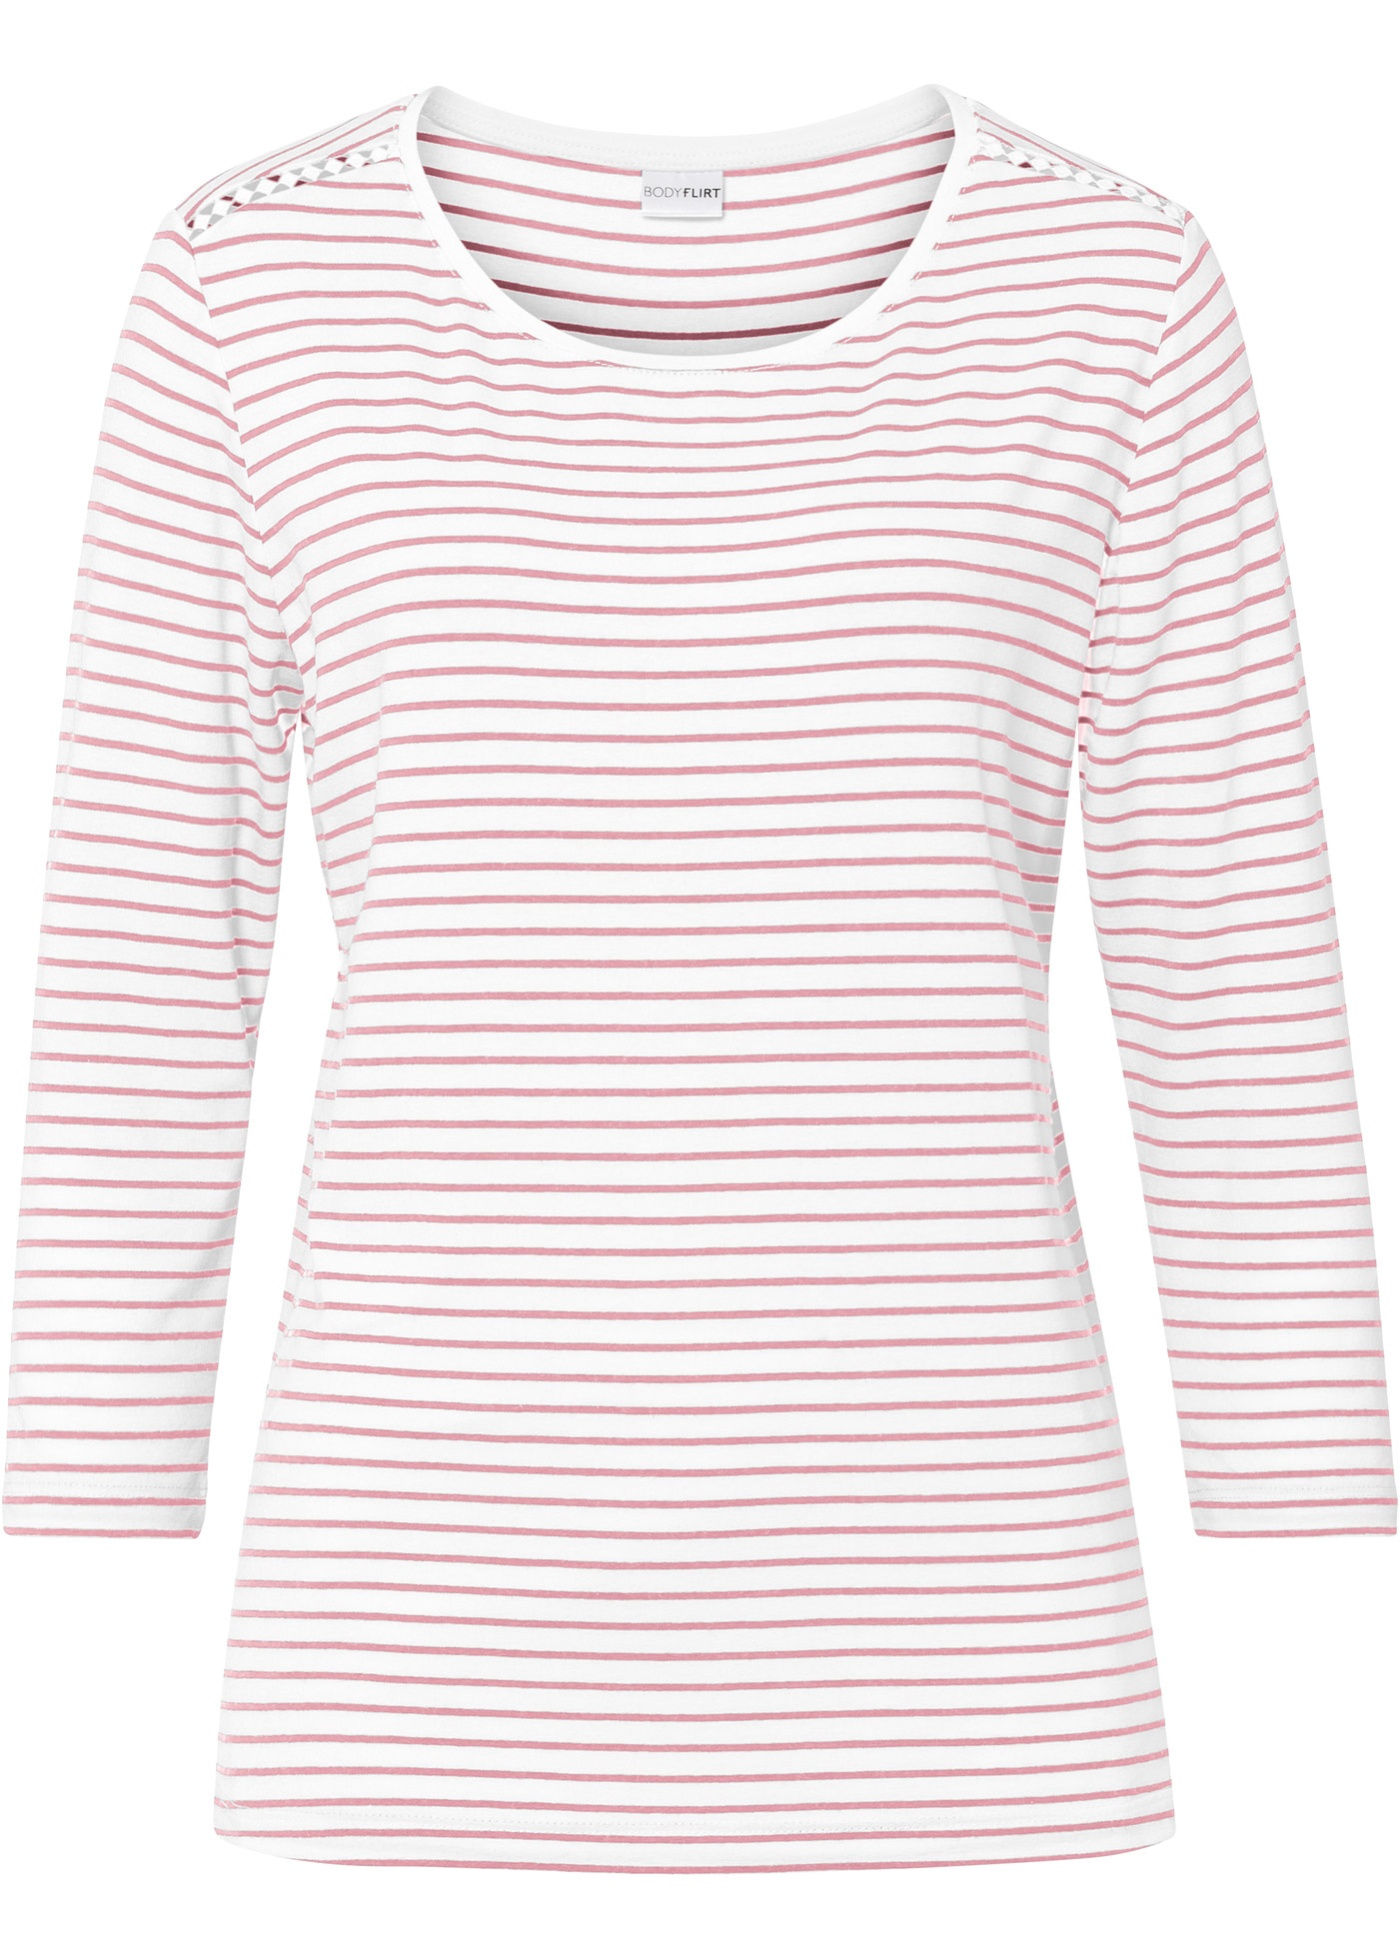 Modisches Shirt mit Streifen und verspieltem Spitzeneinsatz an der Schulter. (97985481) in vintagerosa/weiß gestreift